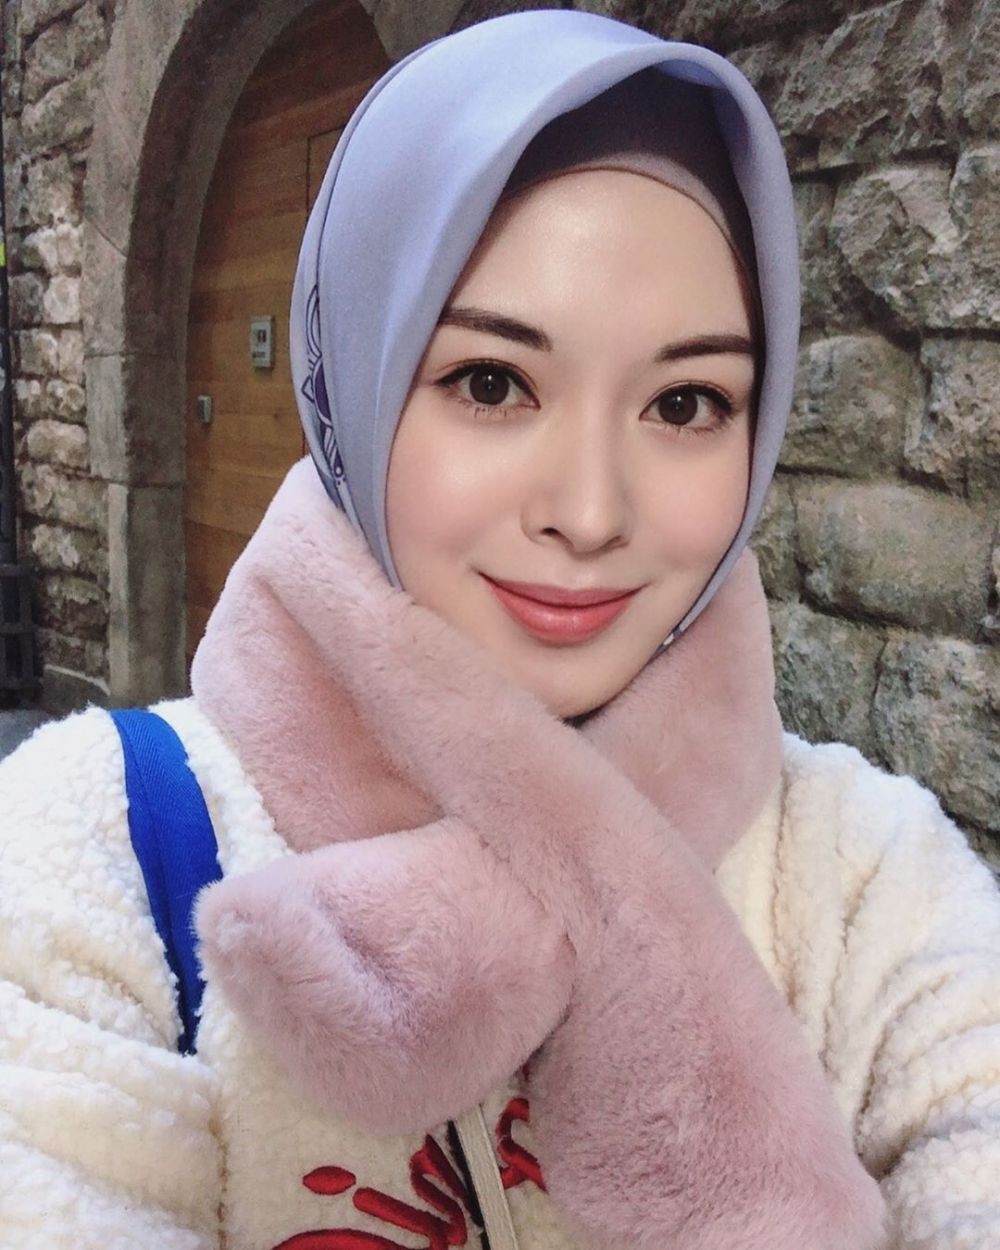 Beragama Islam Ini 6 Idol Kpop Youtuber Korea Yang Rayakan Ramadan Idn Times Jabar [ 1250 x 1000 Pixel ]